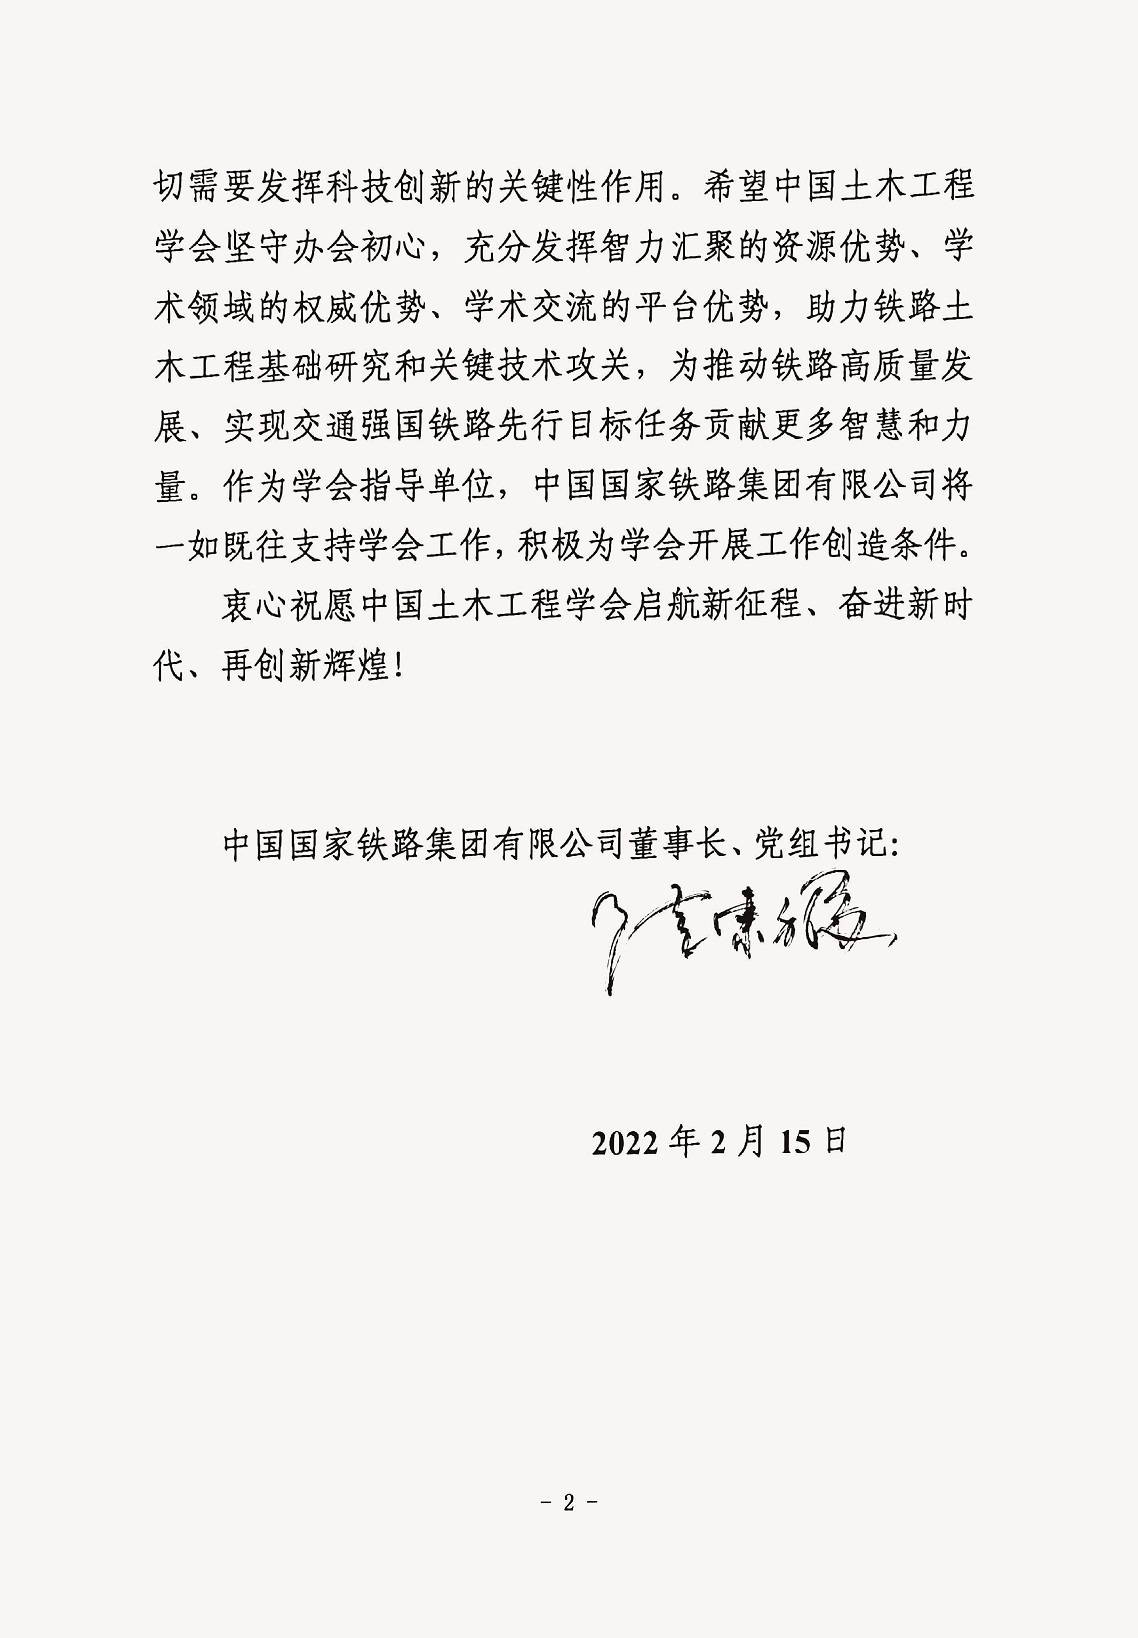 中国国家铁路集团有限公司董事长、党组书记陆东福贺信